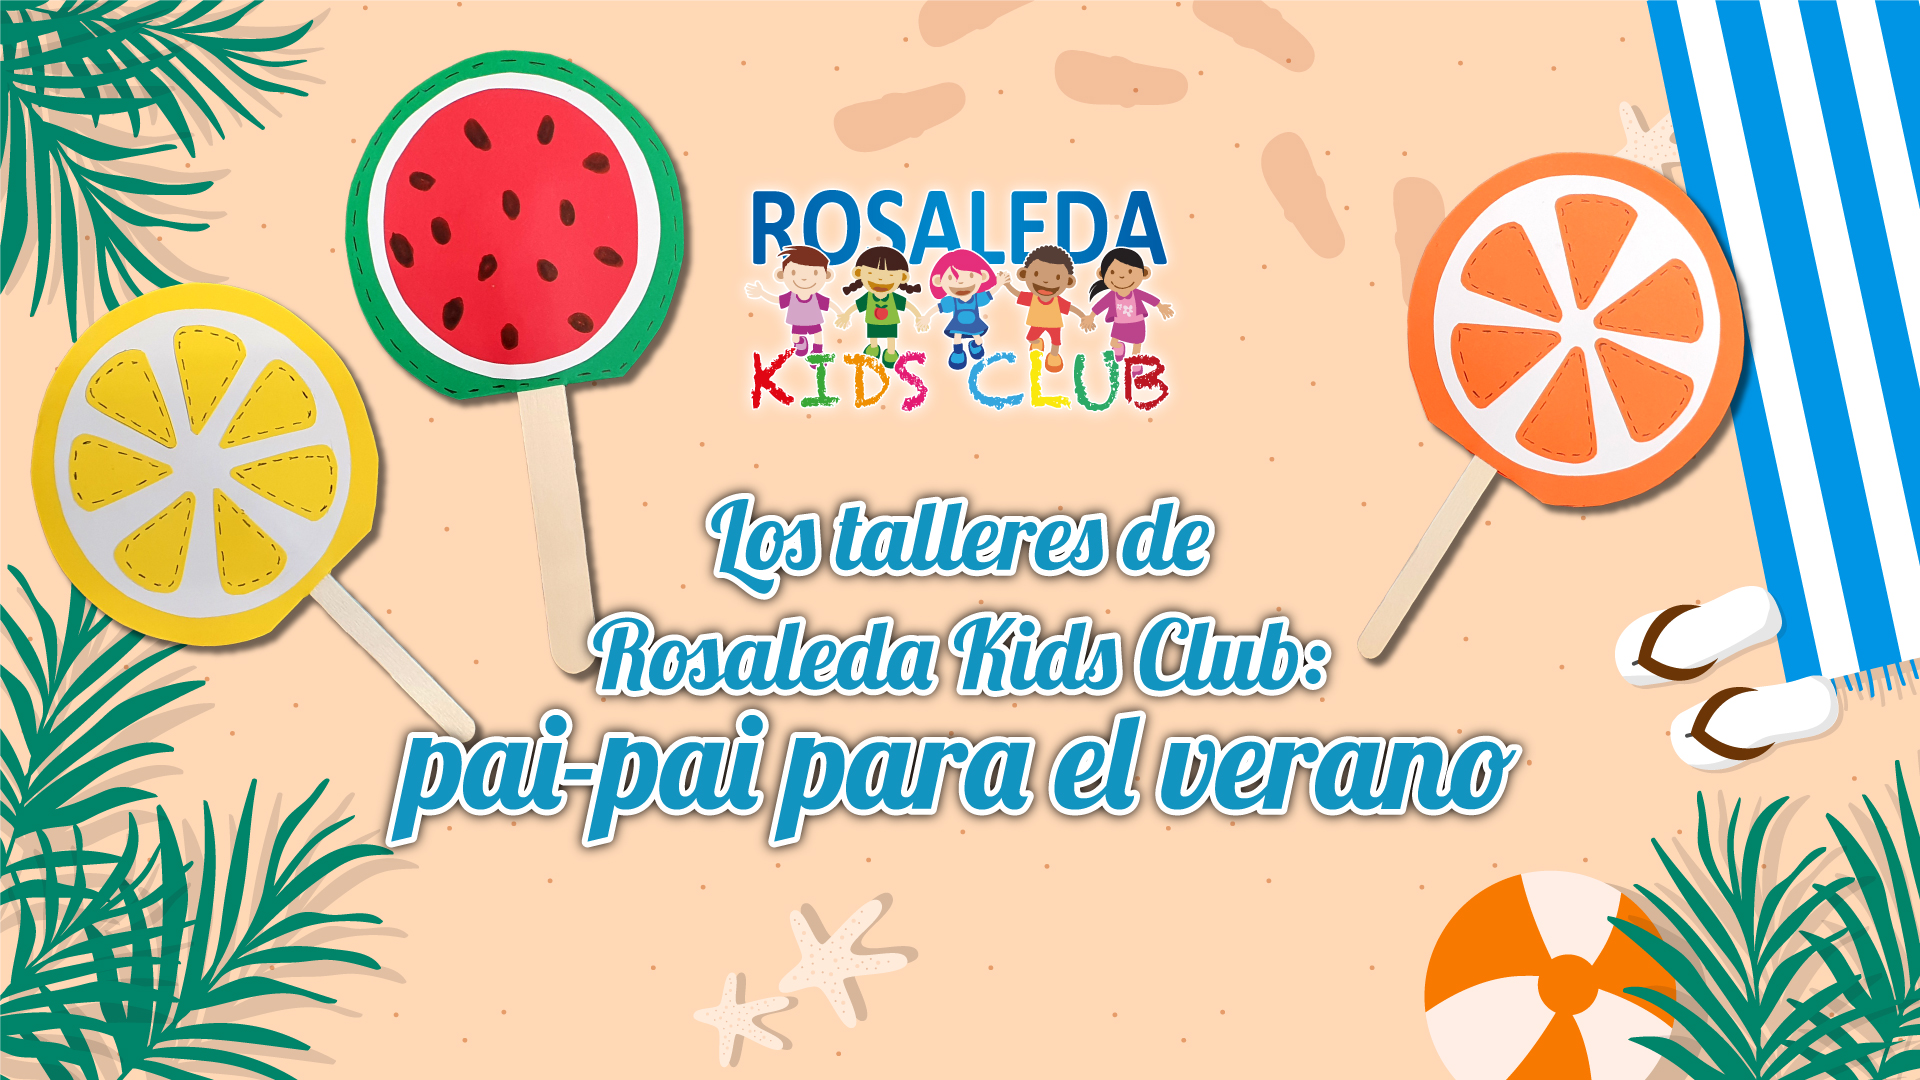 Rosaleda Kids Club: pai pai